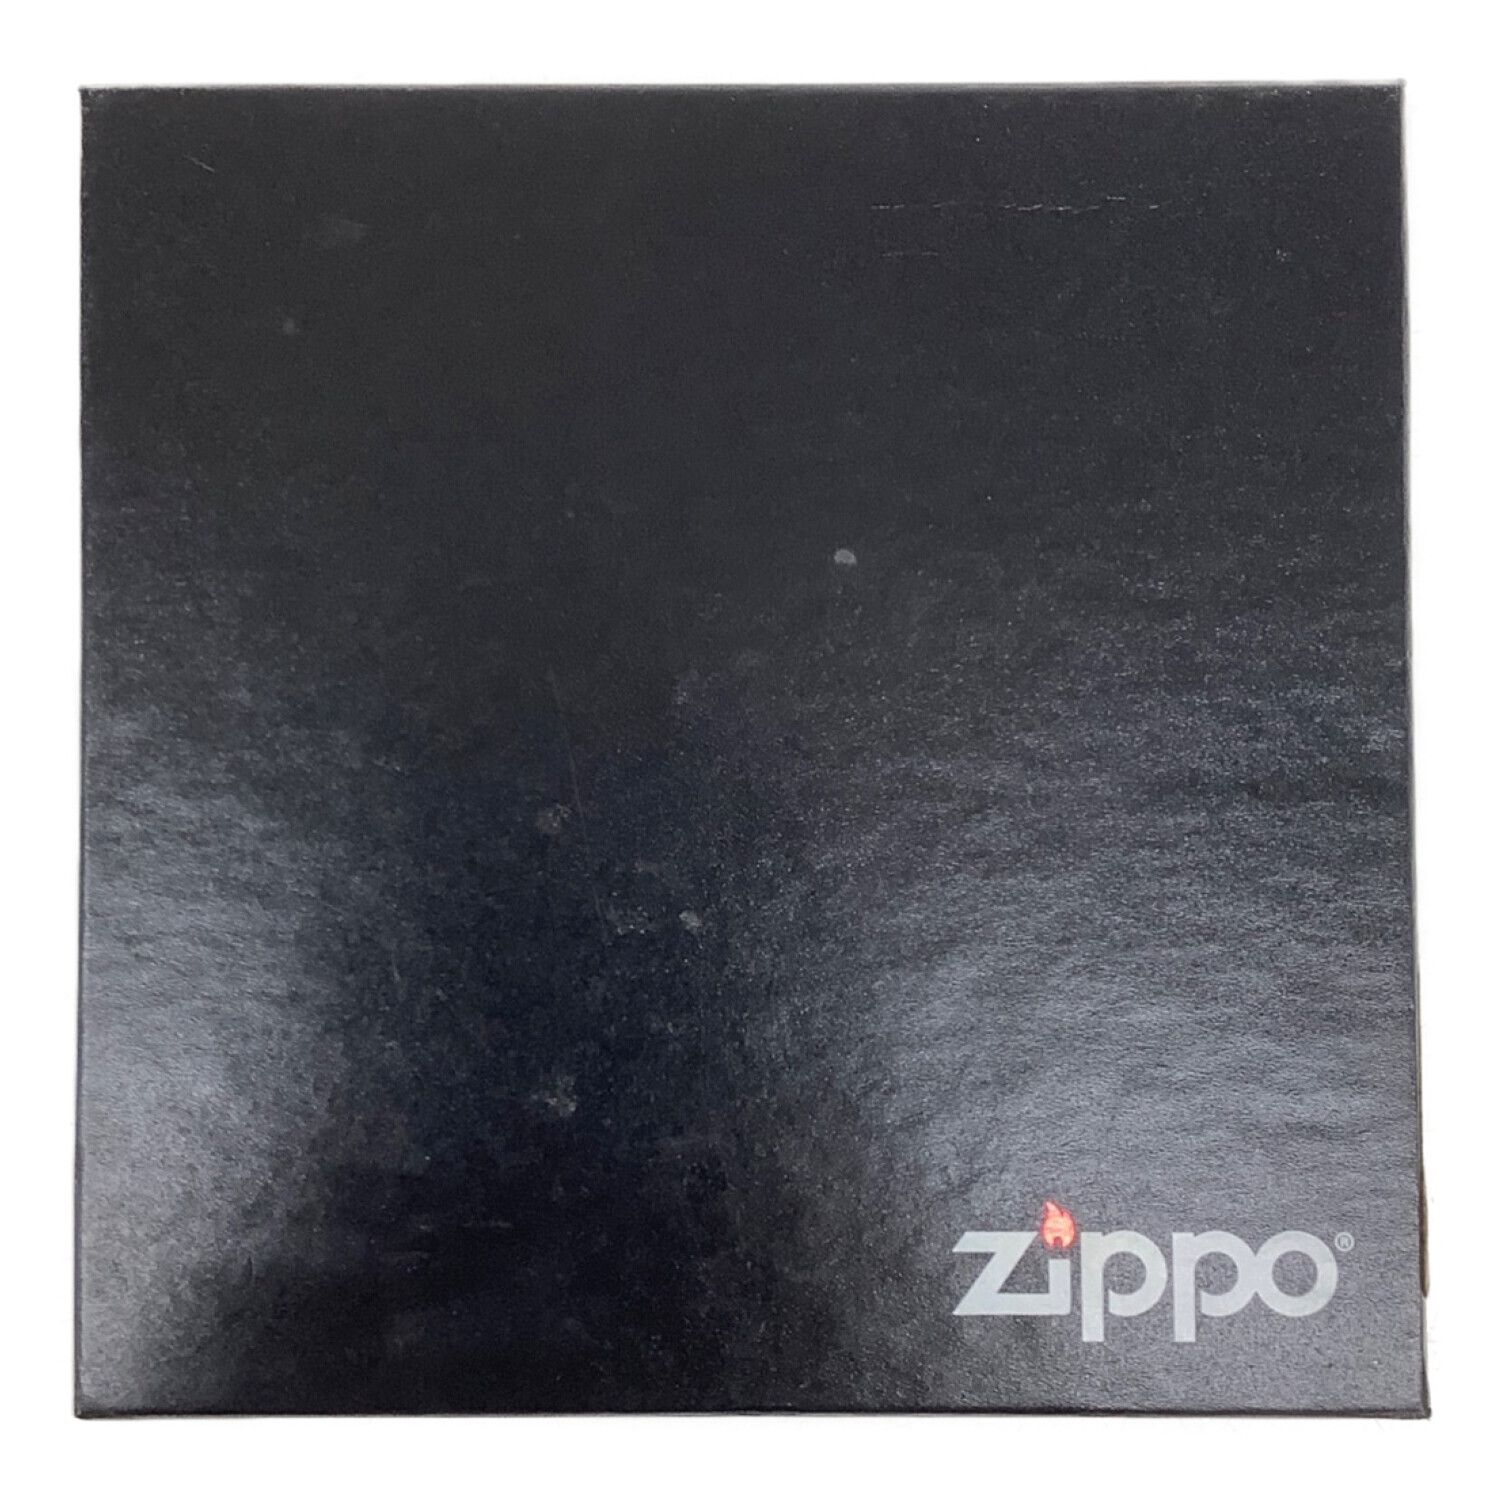 ZIPPO THE BEATLES コレクターズエディション 1997年モデル 